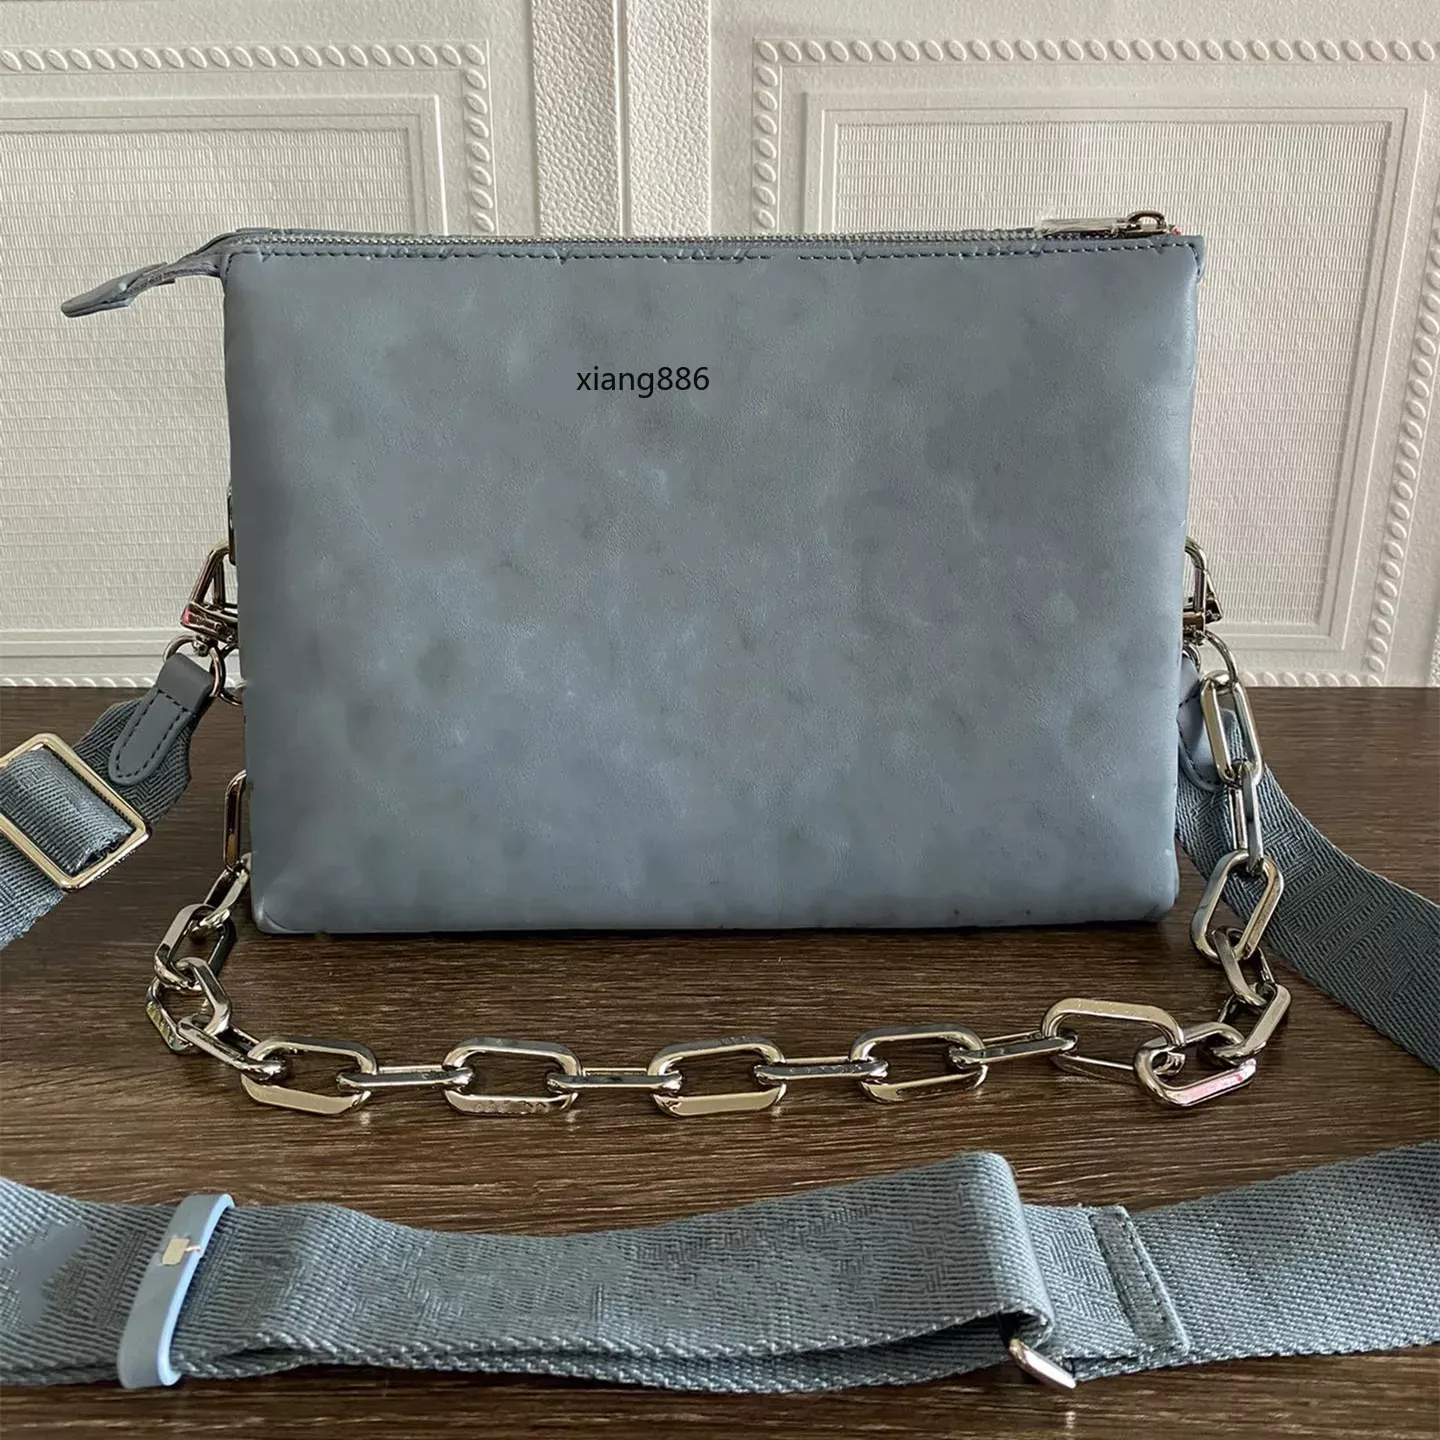 الأكياس المسائية حقيبة مصممة للنساء براءة اختراع جلدية منقوشة حرف واحد حقيبة كتف واحدة